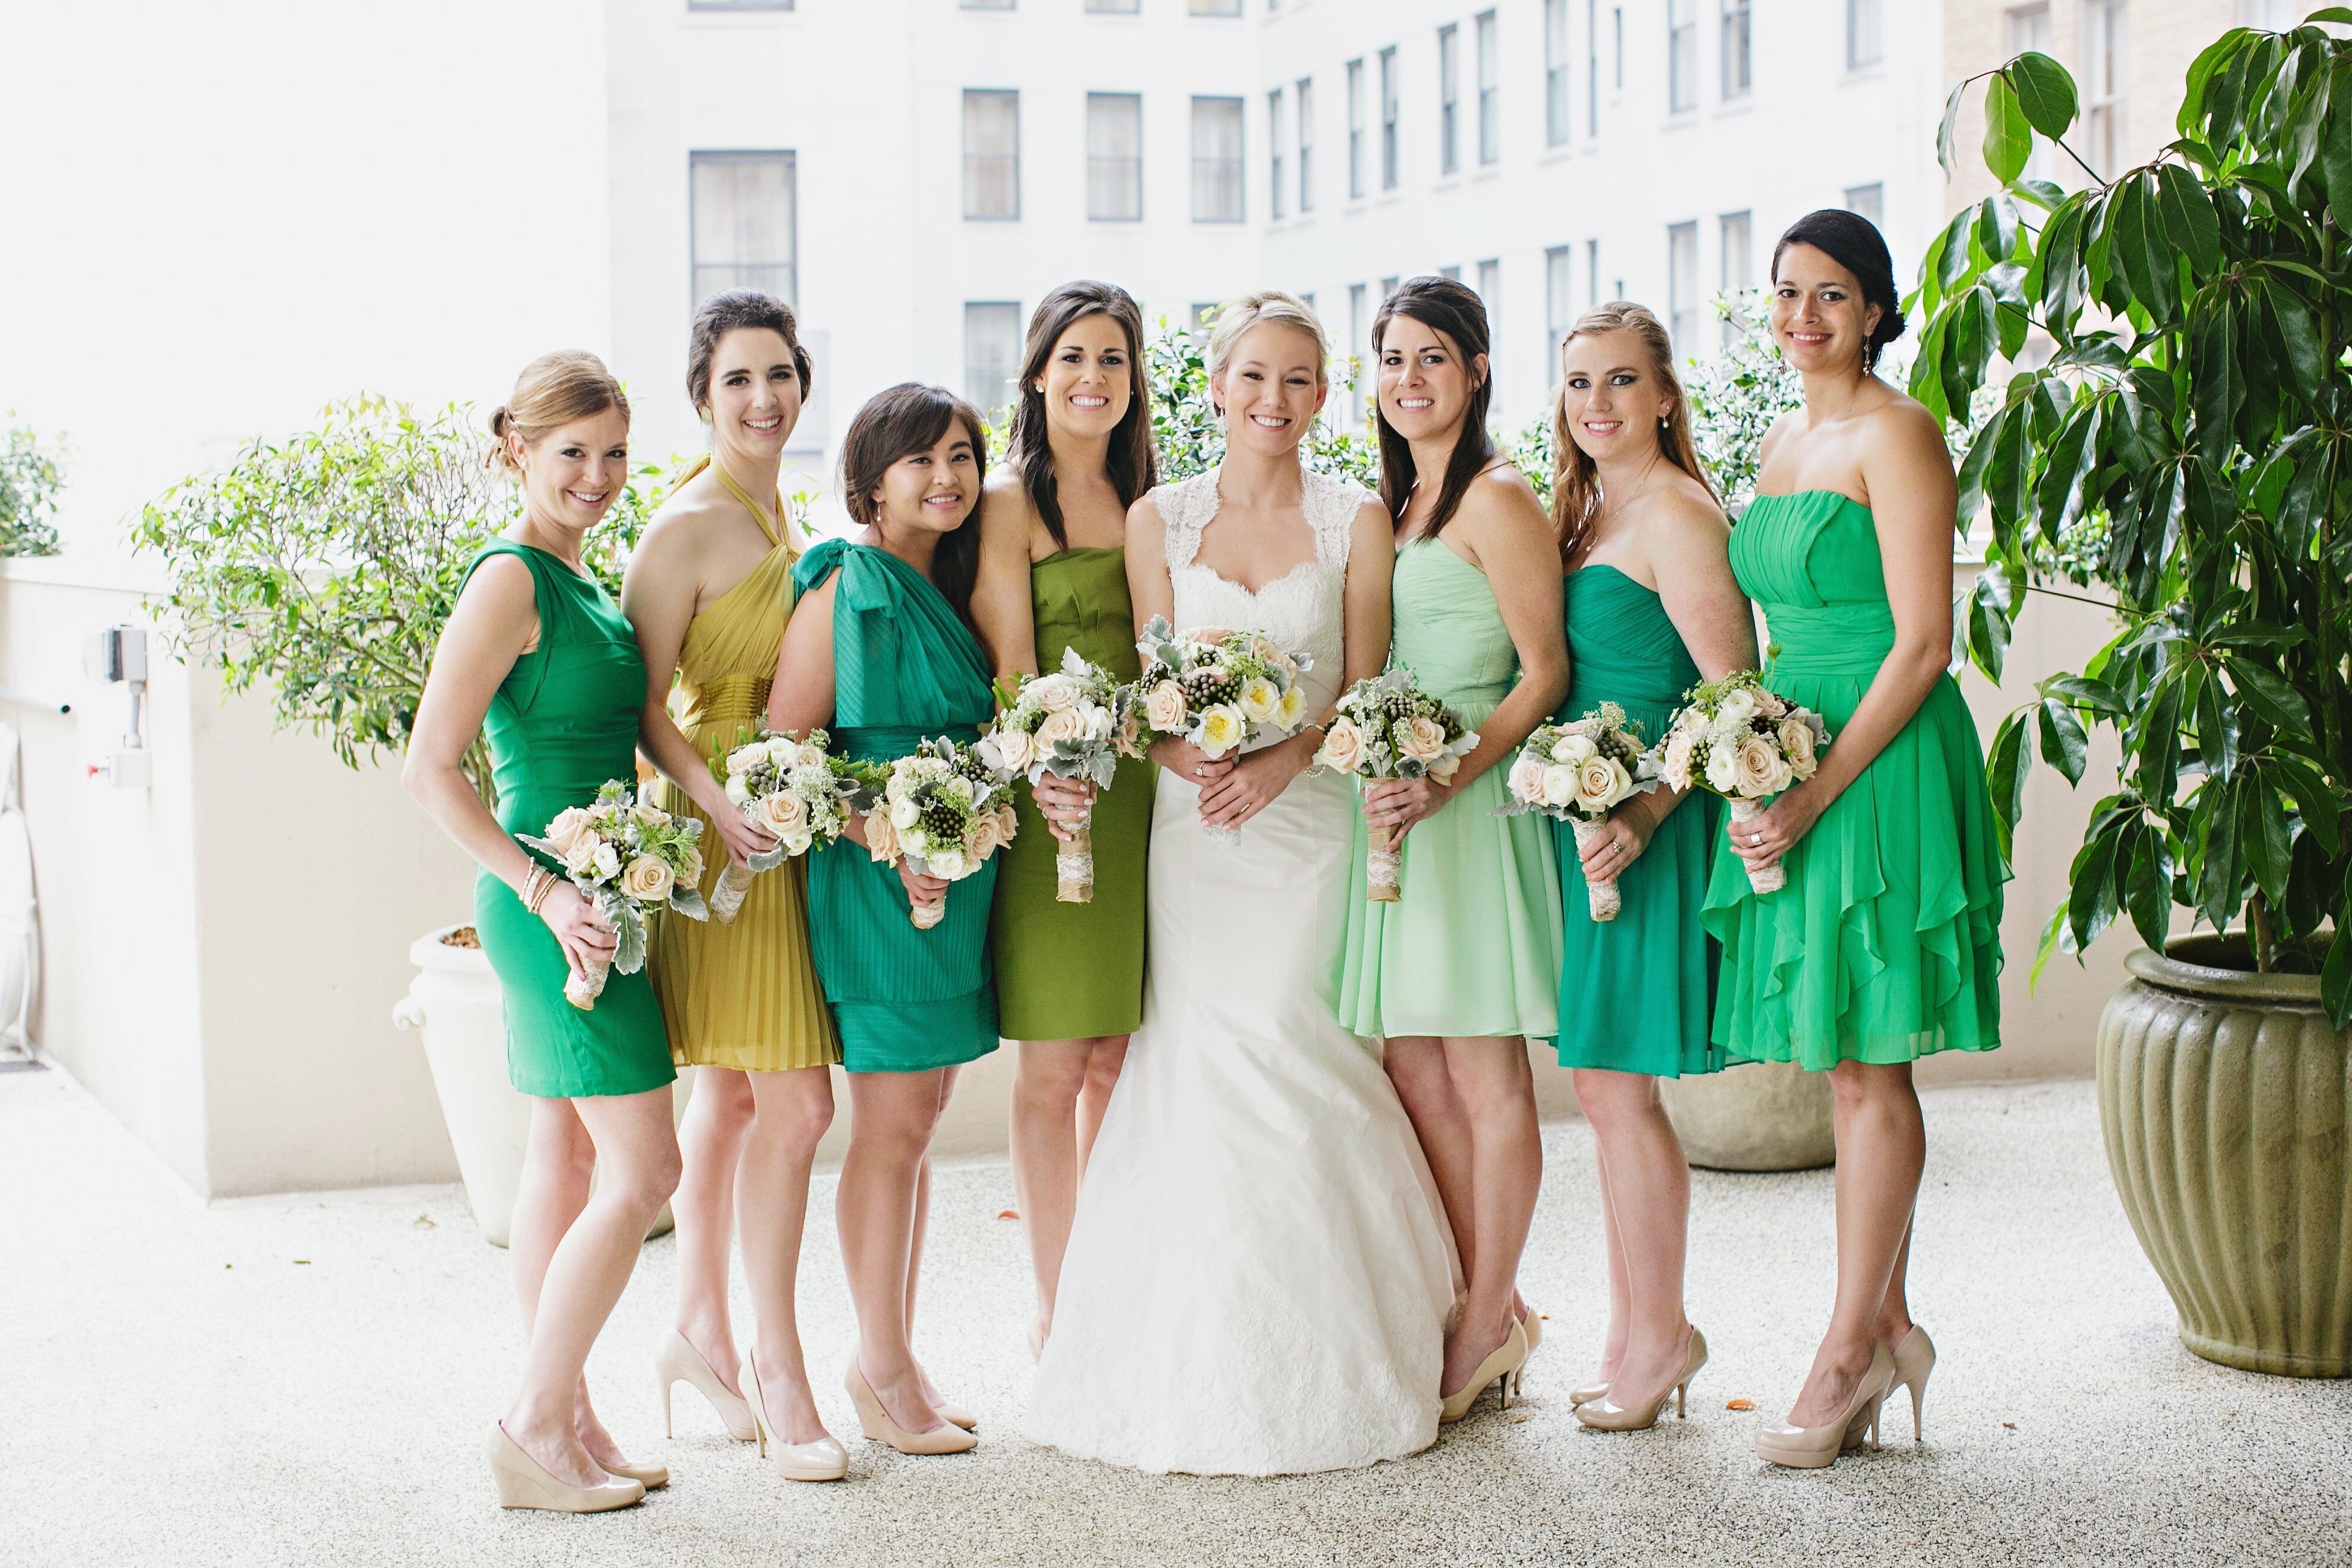 Дресс код на свадьбу для гостей. Изумрудные платья подружек невесты. Свадьба в зеленых тонах. Платье на свадьбу для гостей. Подружки невесты в зеленых платьях.